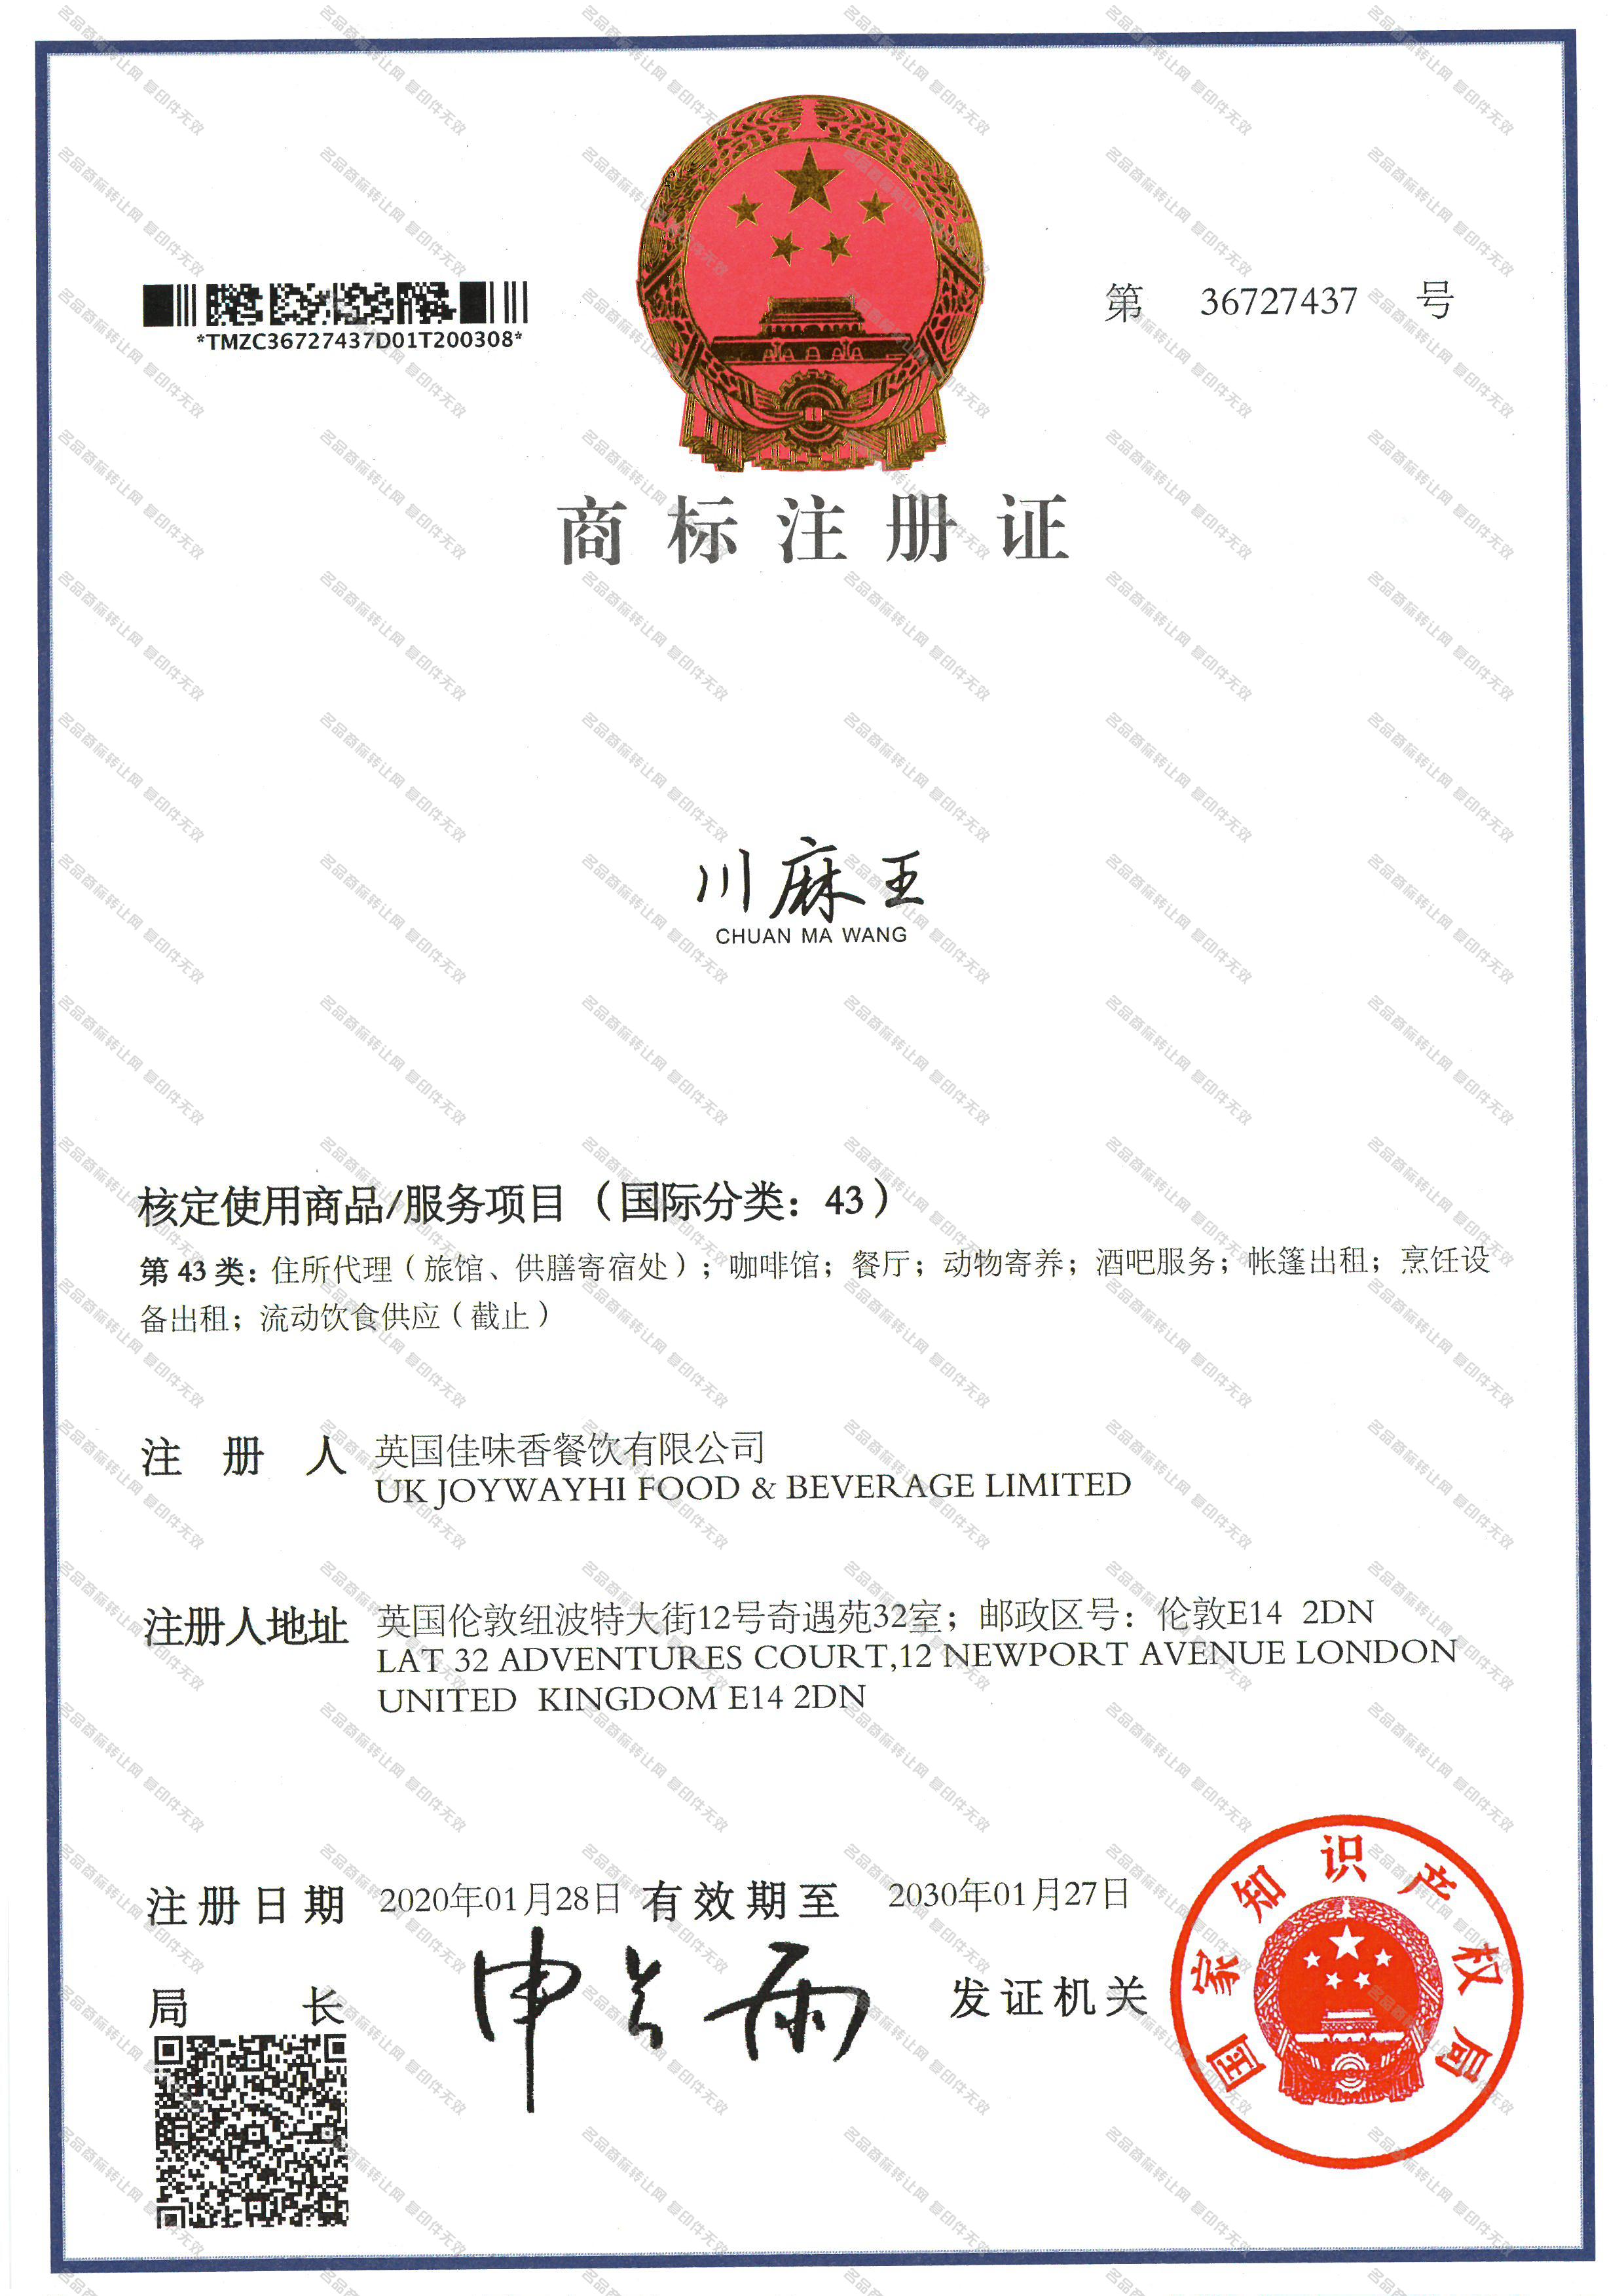 川麻王 CHUANMAWANG注册证